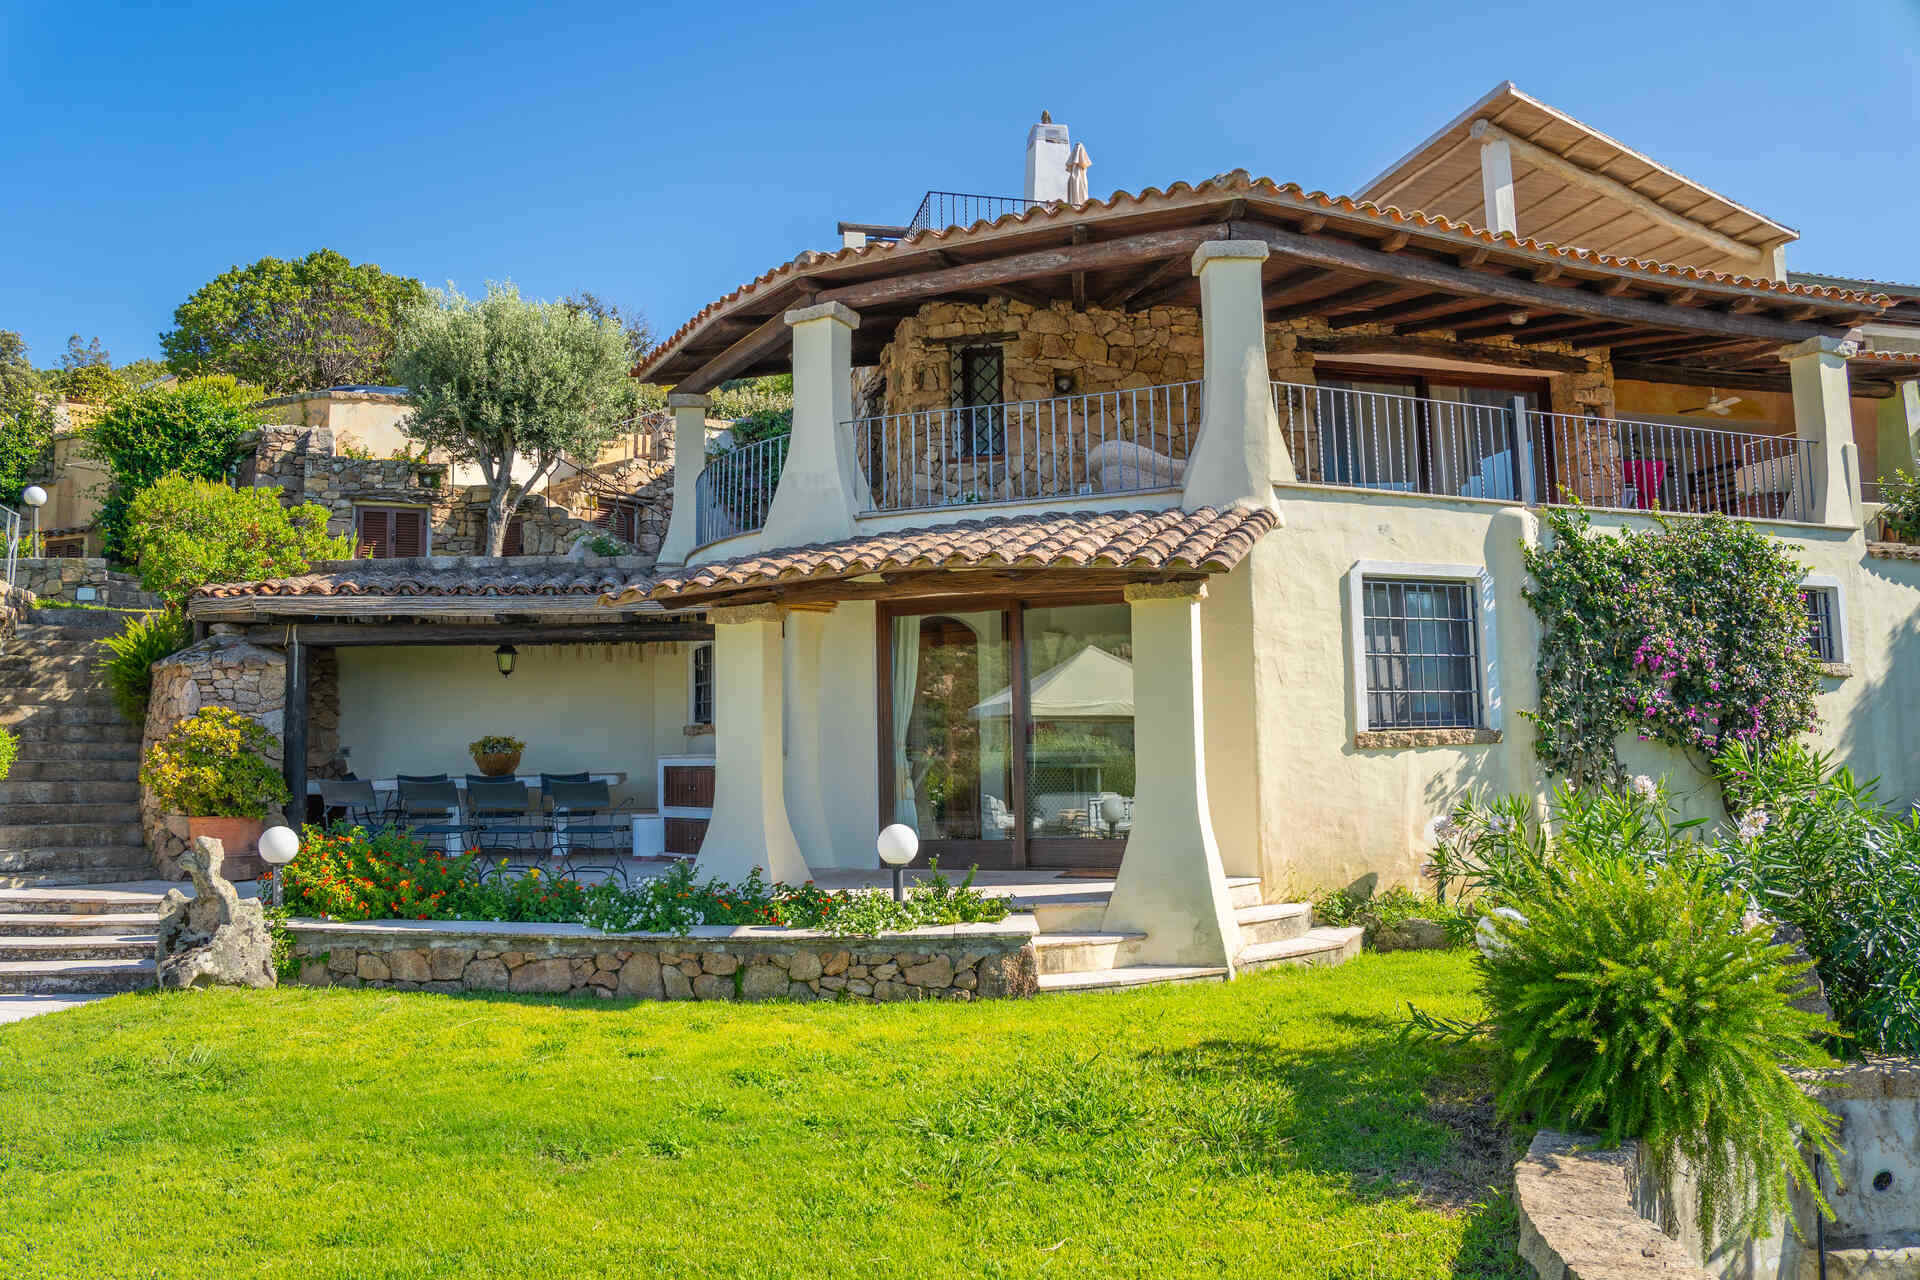 Semi-detached villa in the beautiful setting of Baja Sardinia